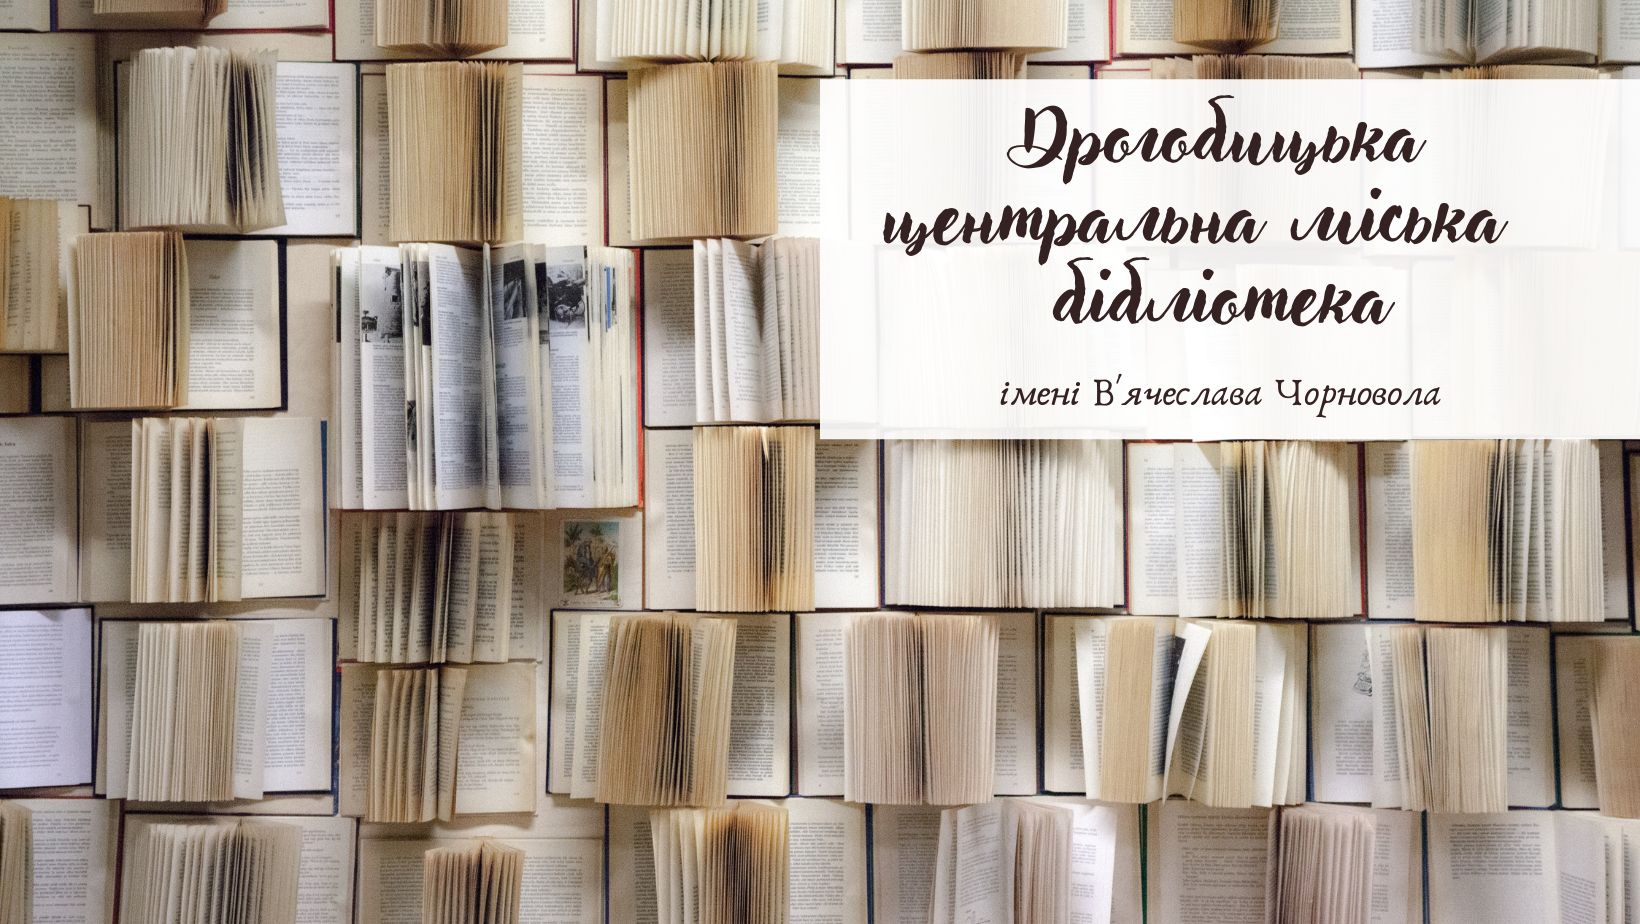 «Подаруй бібліотеці книгу»: у Дрогобичі триває акція з поповнення бібліотечних фондів друкованими новинками